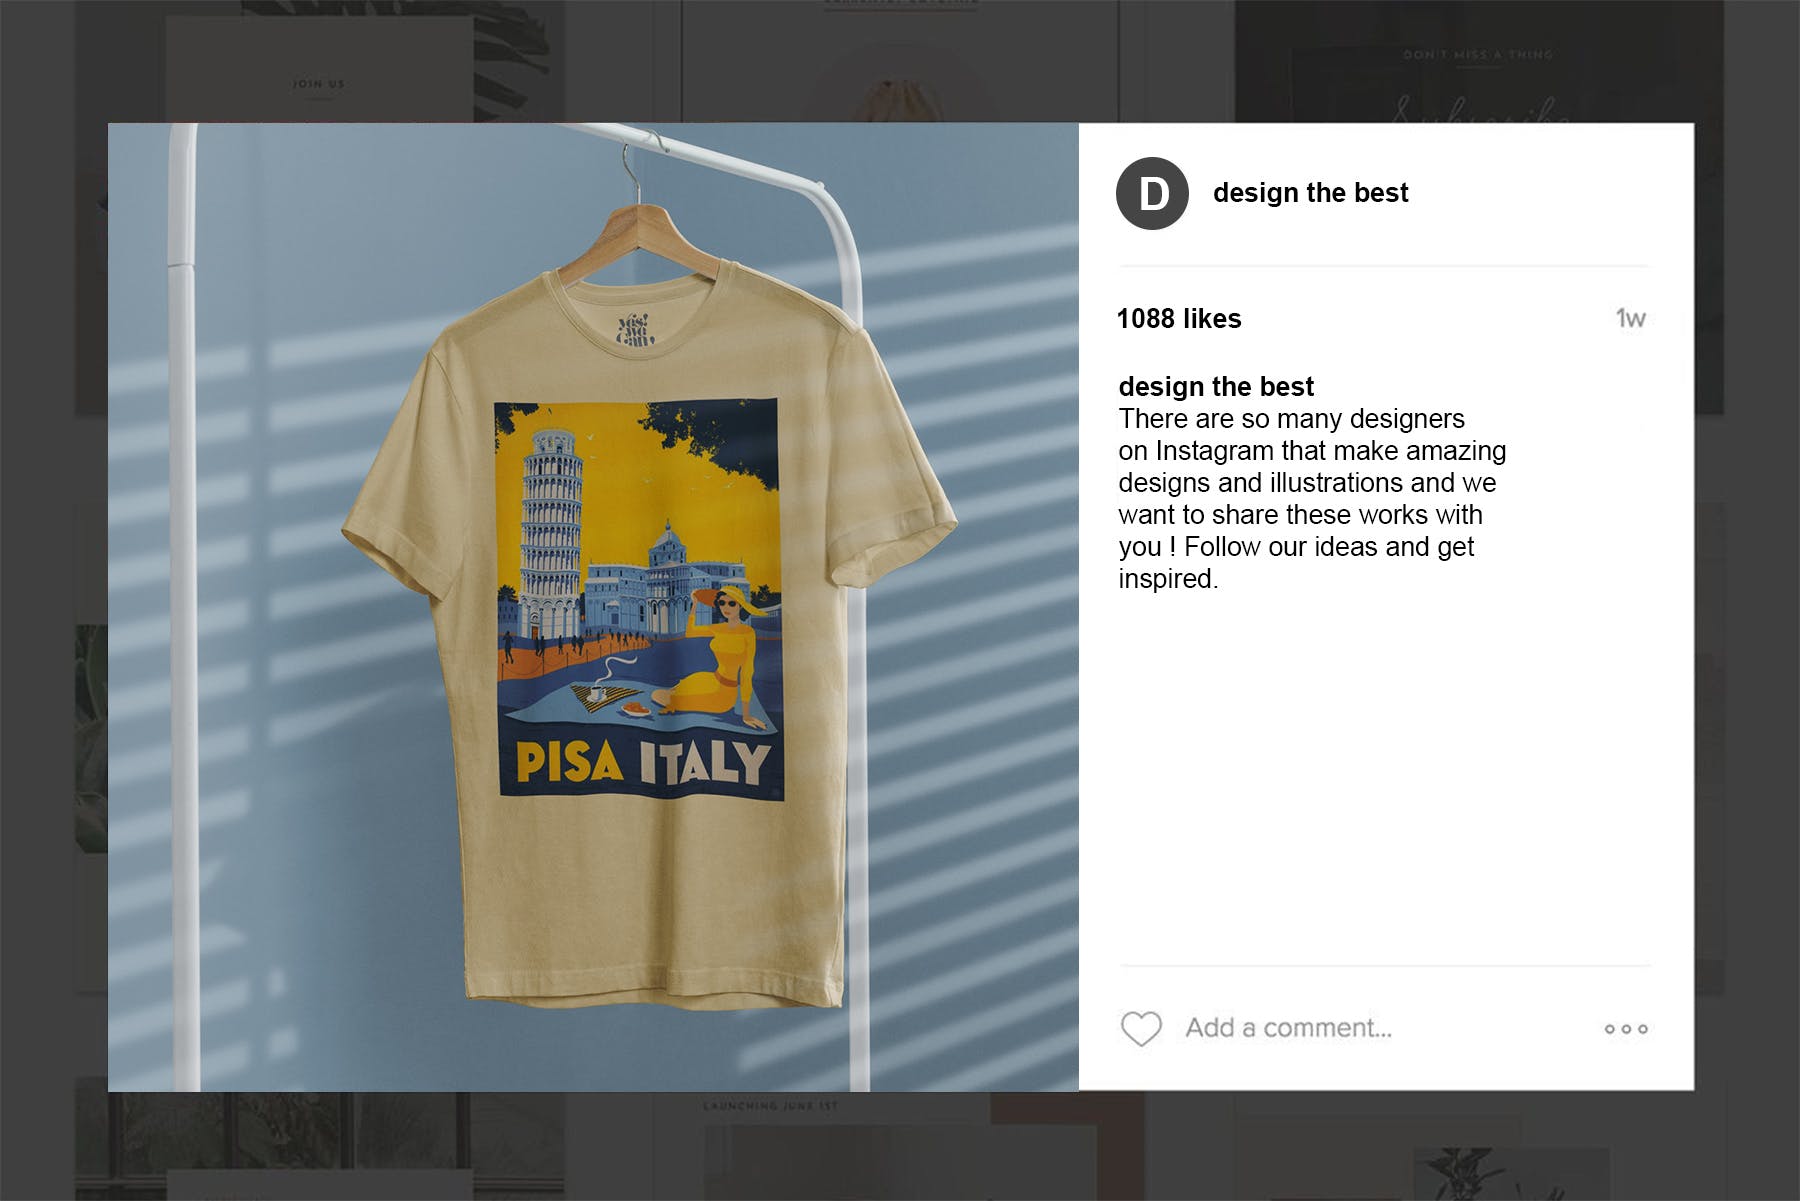 简易晾衣架T恤设计效果图样机第一素材精选 T-Shirt Mock-Up on Hanger插图(12)